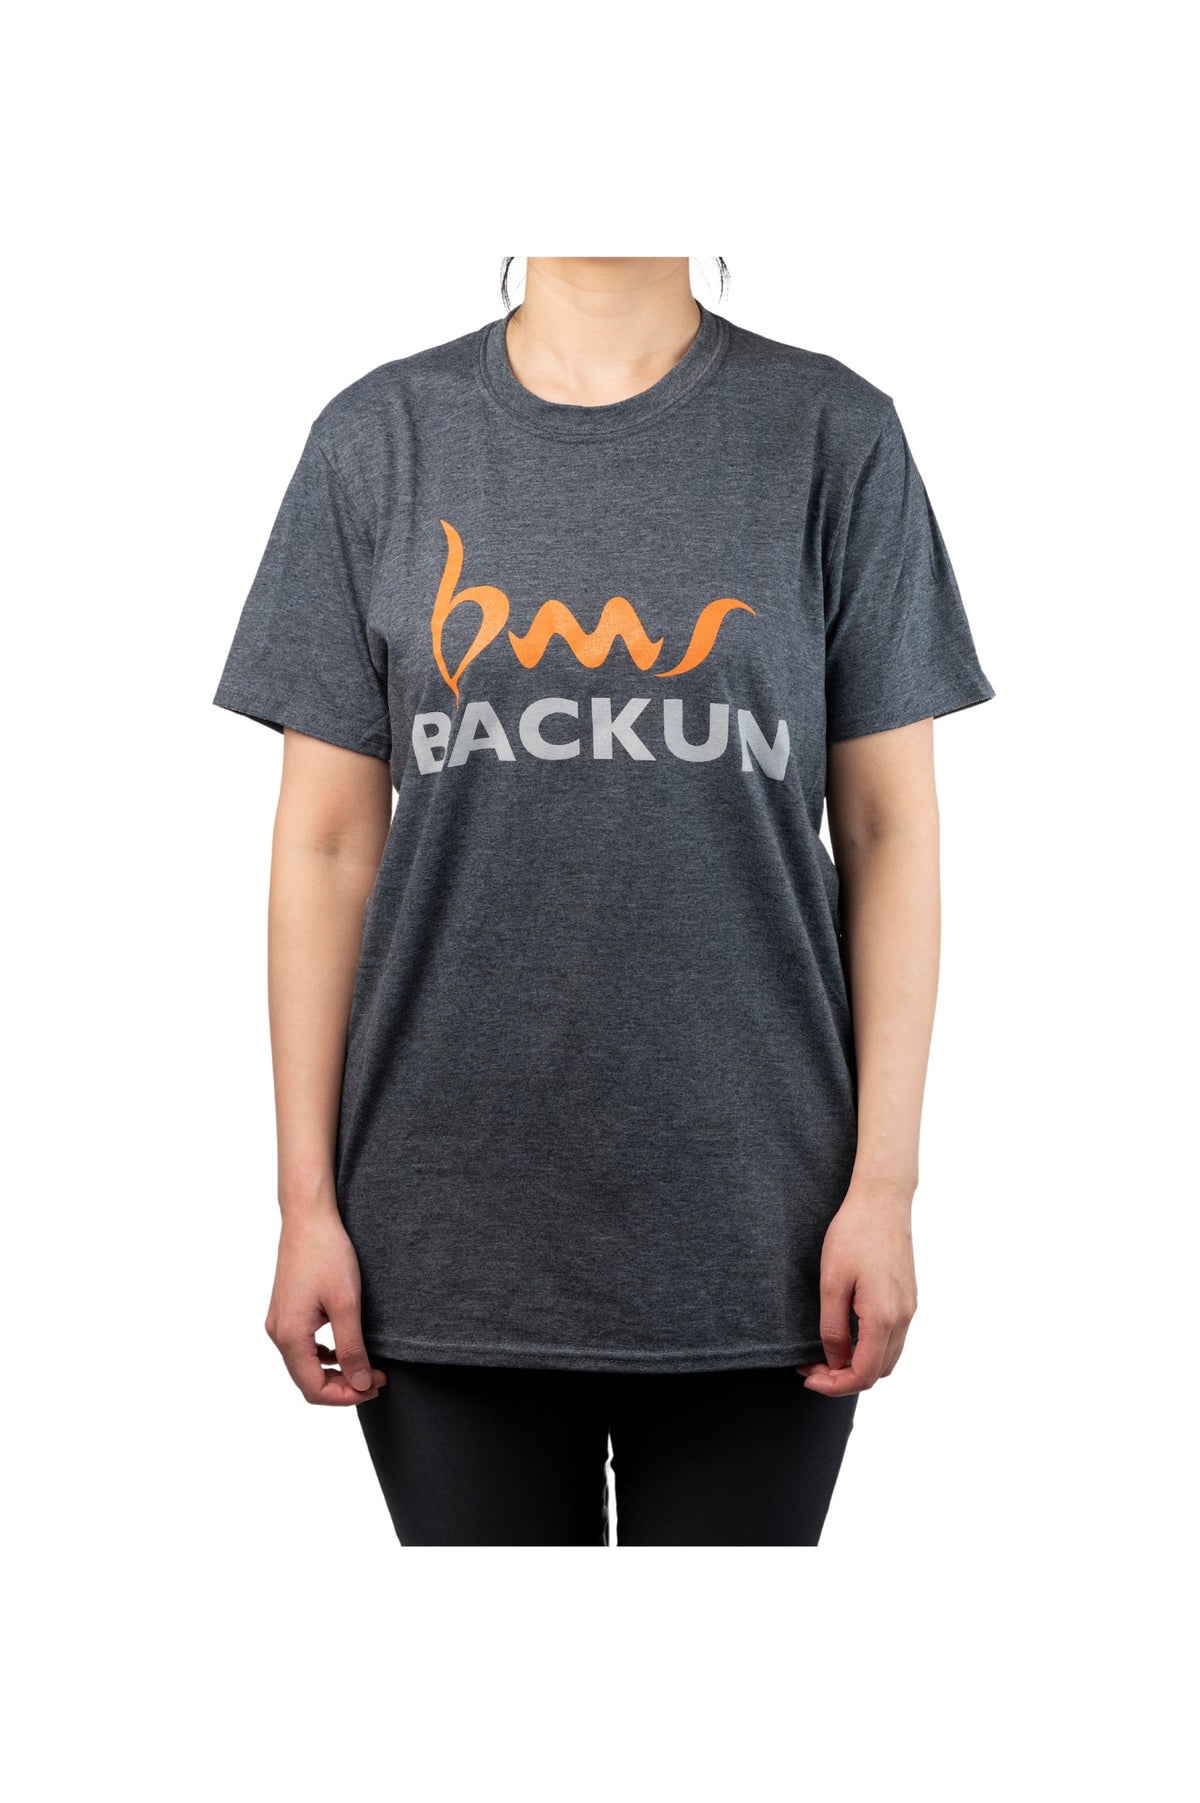 backun-shirt-1